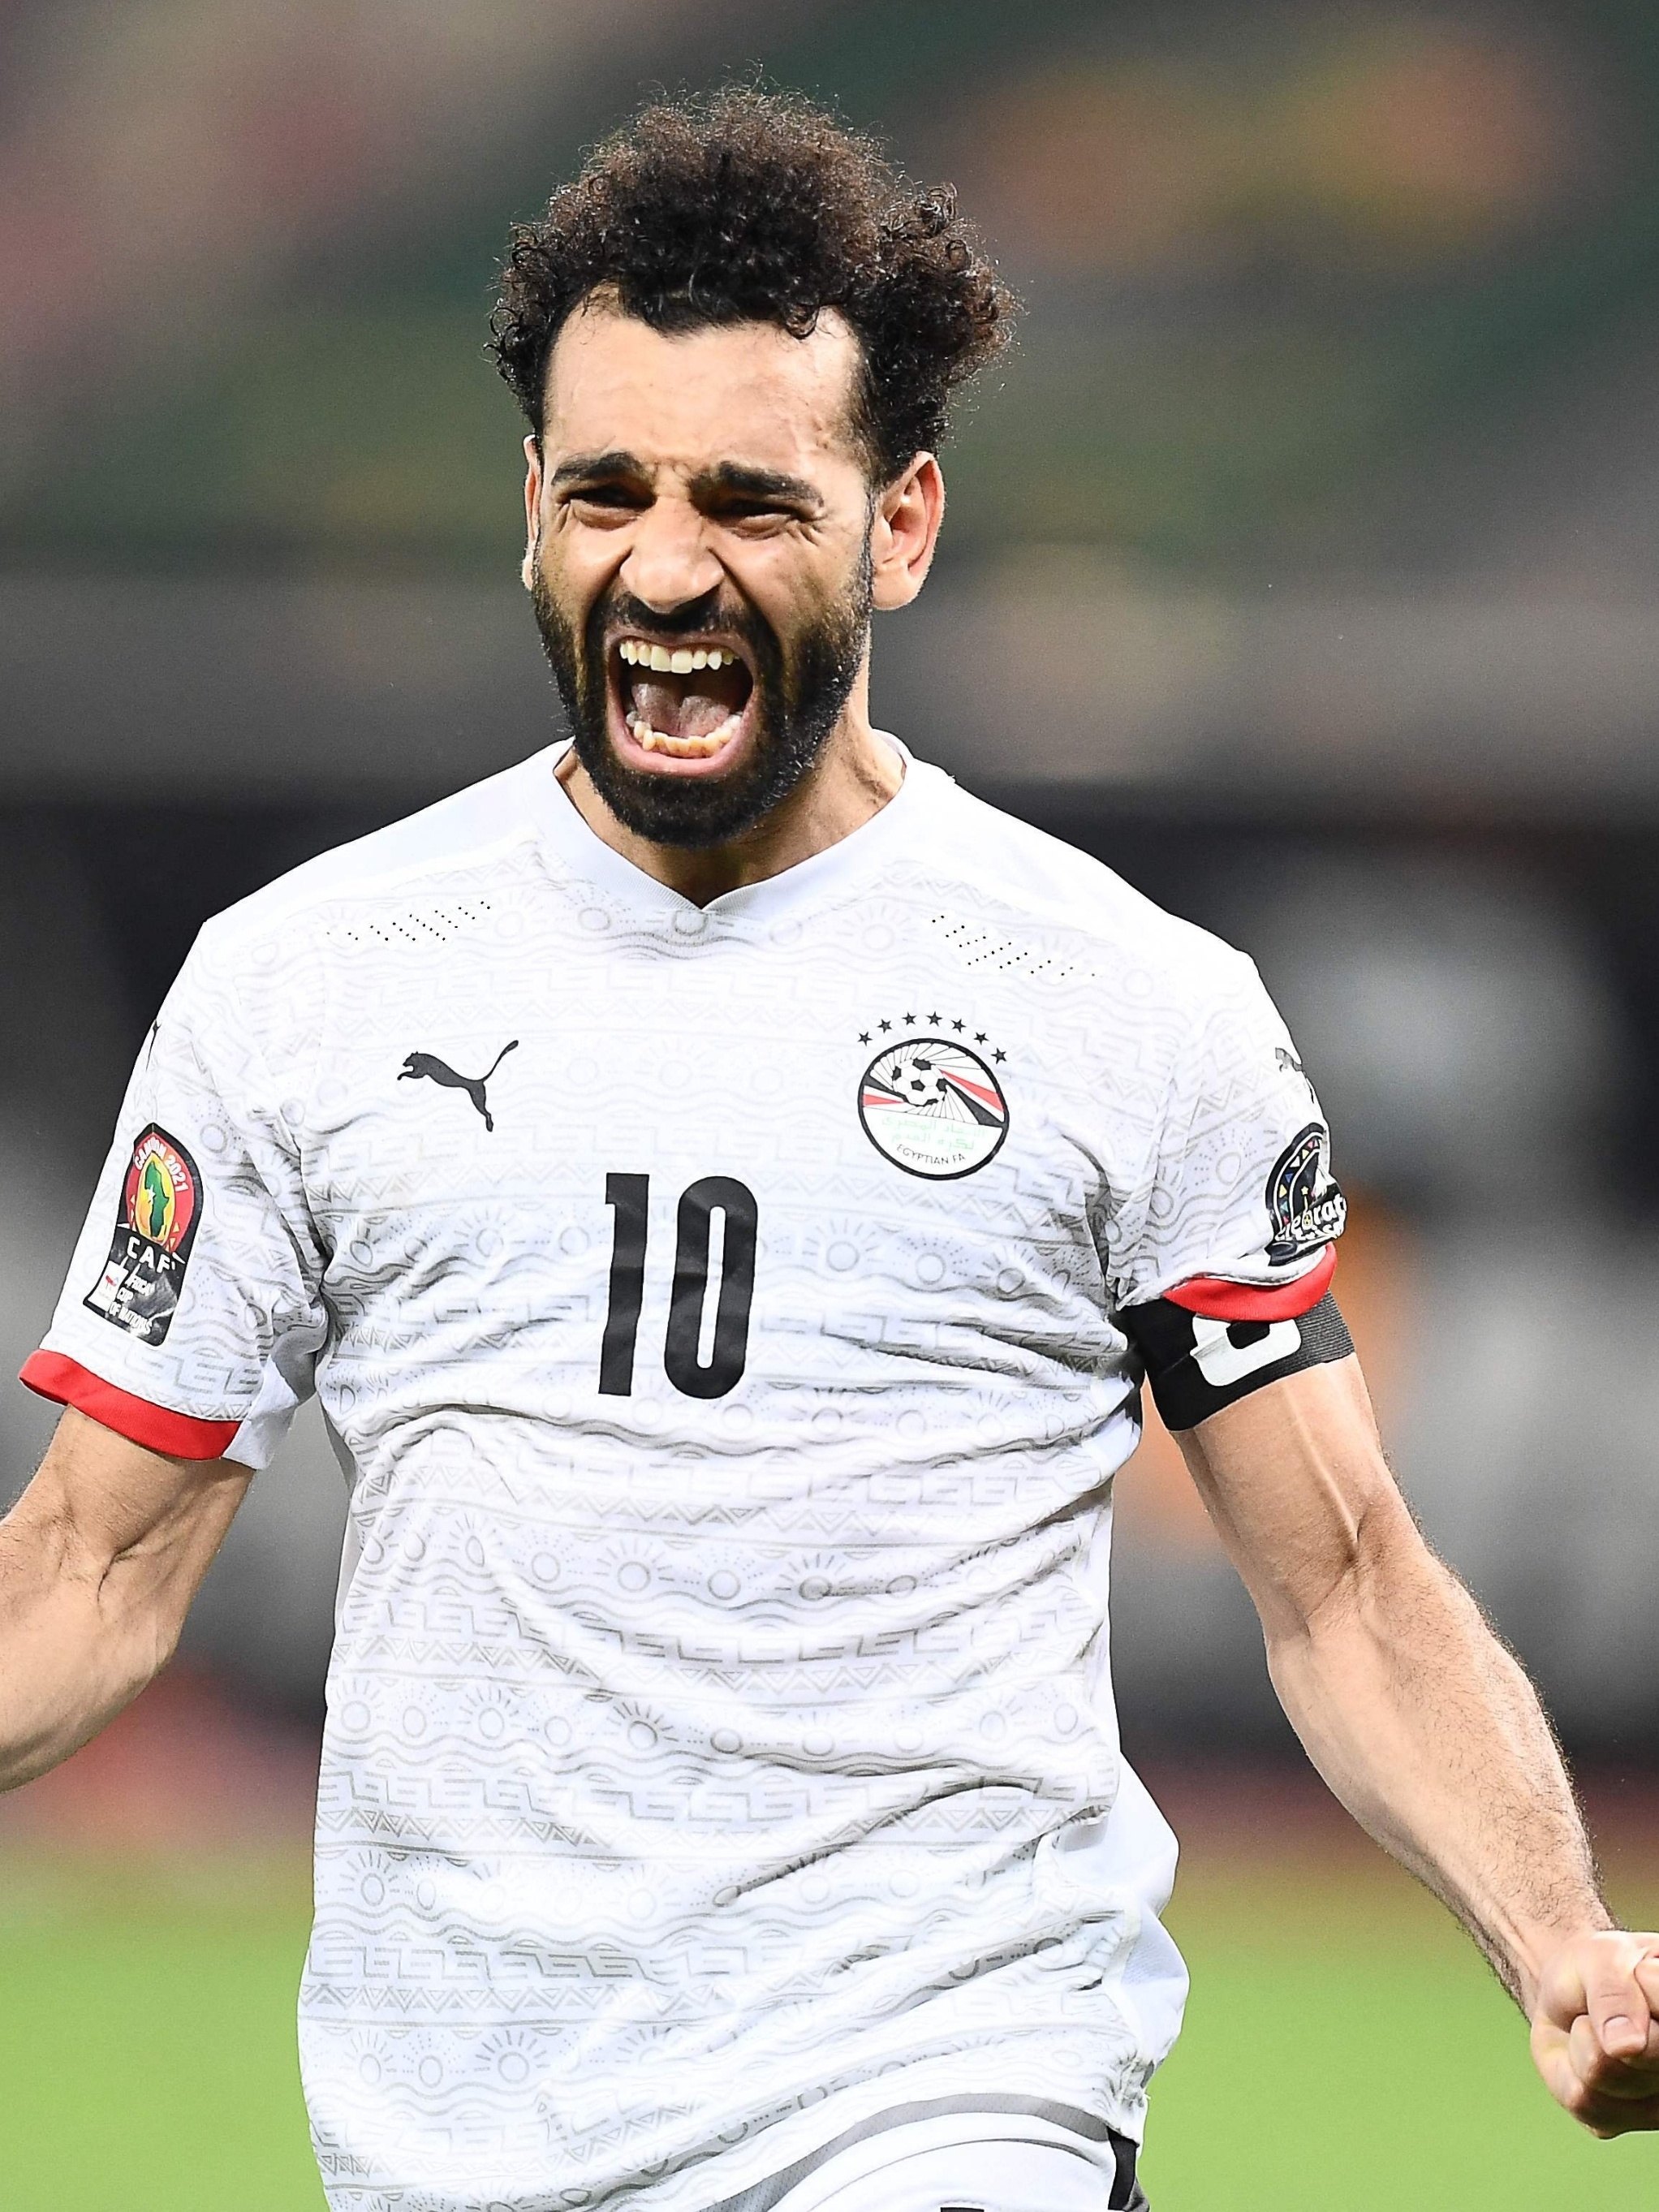 Egito, de Salah, e Senegal, de Mané, vão disputar título da Copa